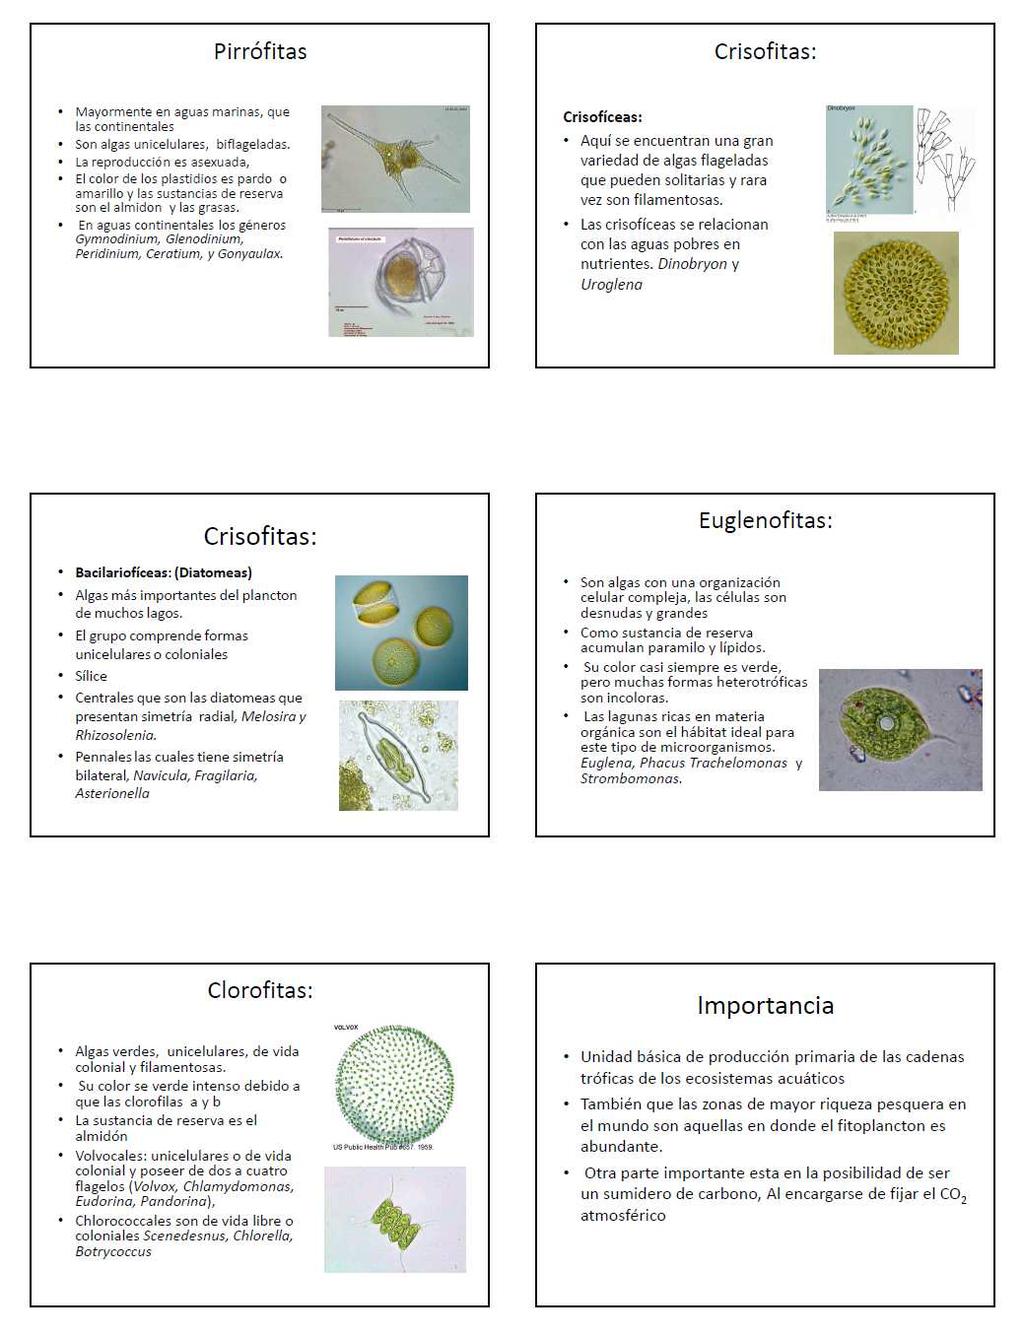 Figura no 4 Imagen de la continuación de las diapositivas utilizadas al momento de realizar la exposición Biología del Fitoplancton a los estudiantes del curso de Zoología de Invertebrados I. 1.